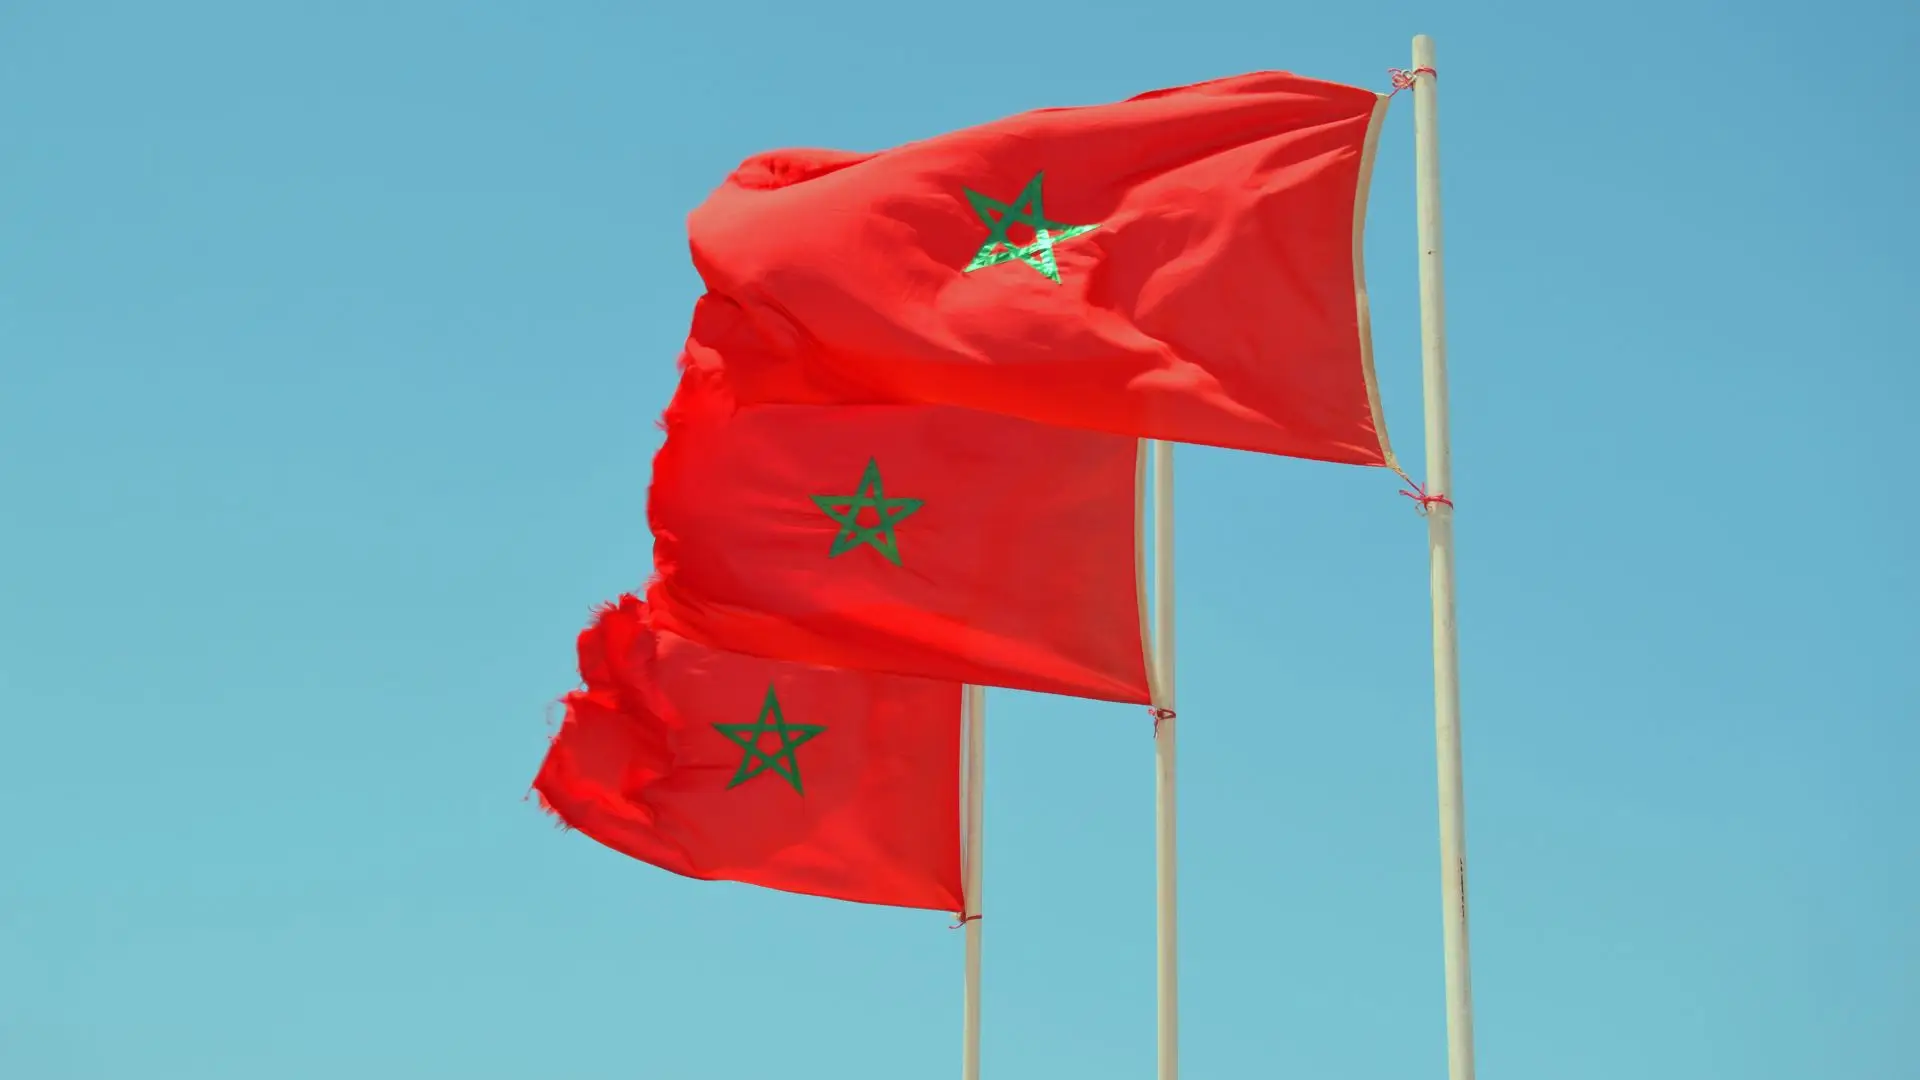 Covid-19: Marrocos proíbe entrada no país a pessoas provenientes da China